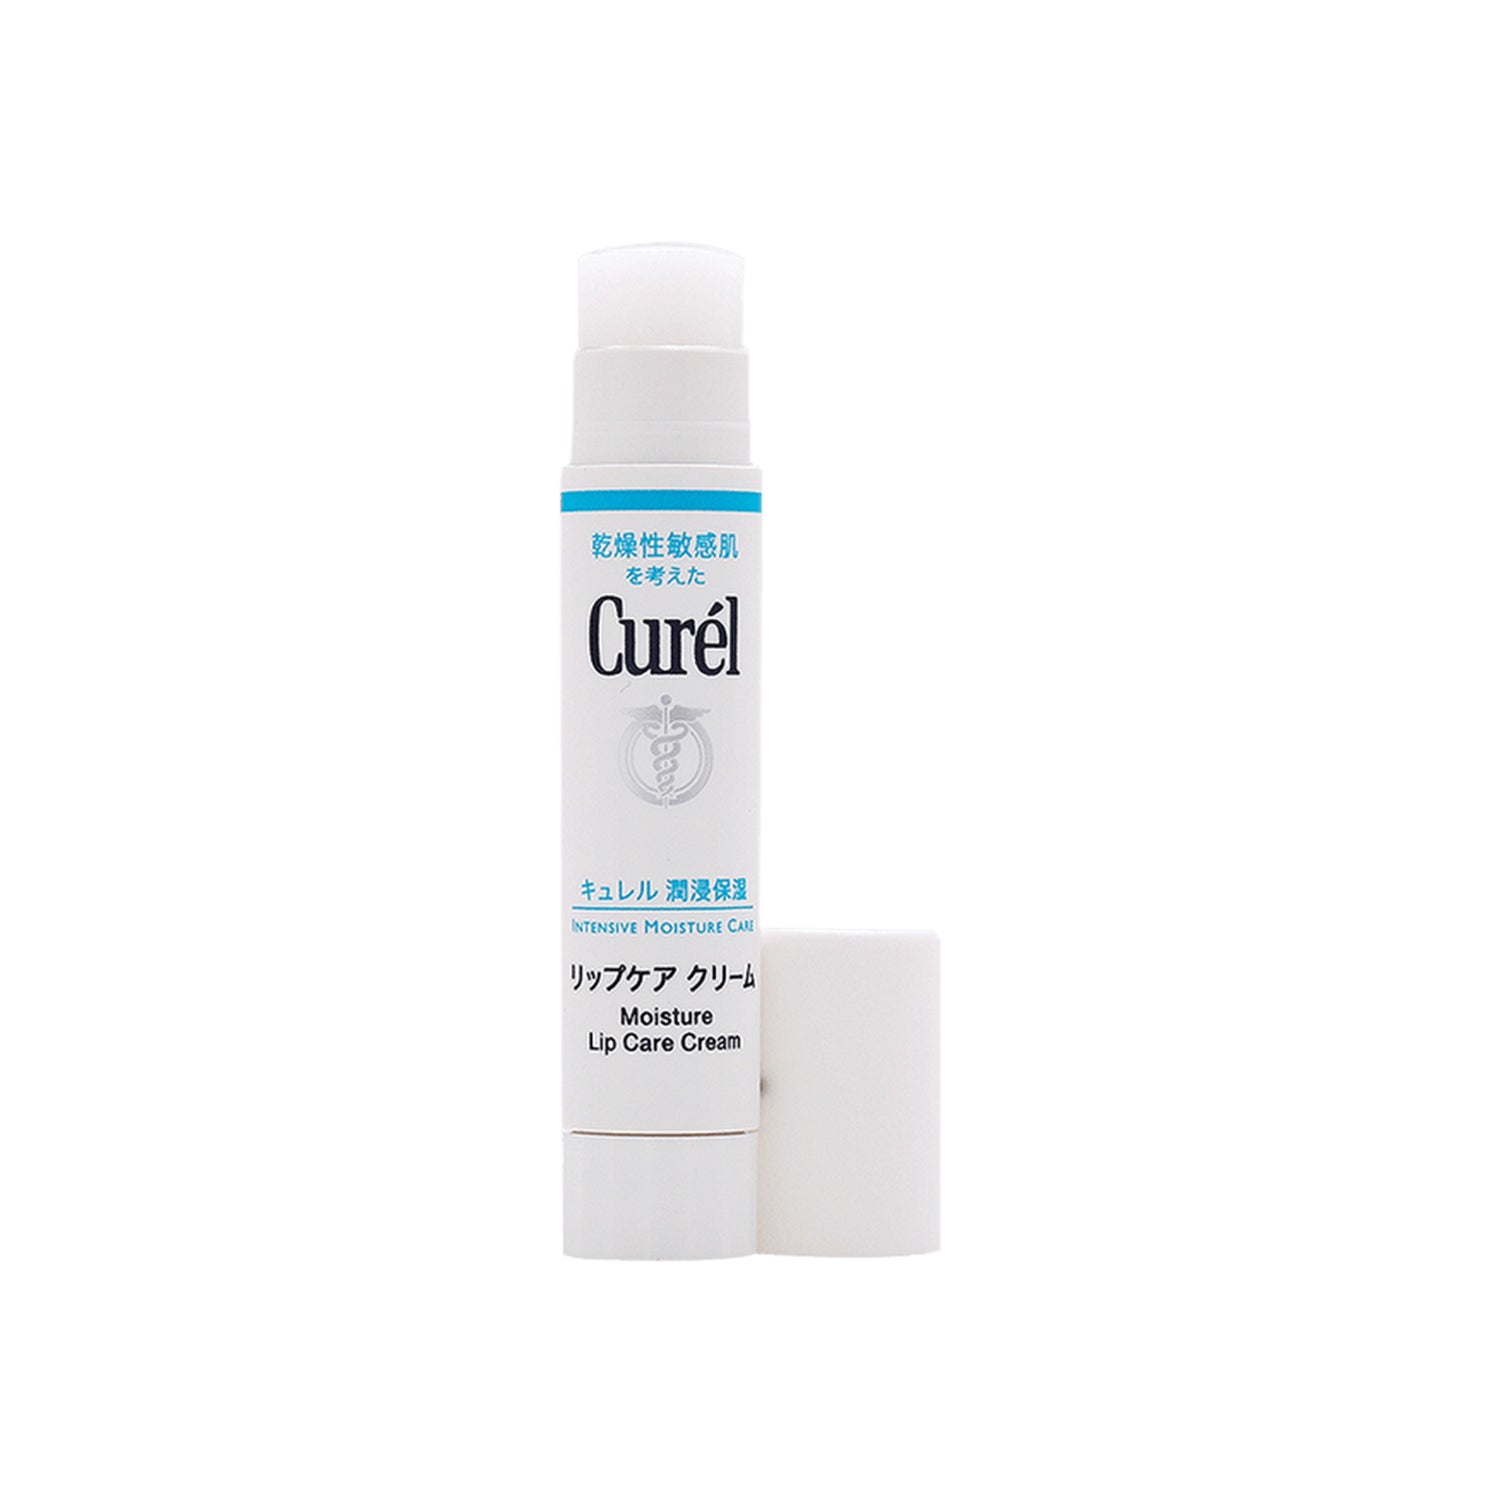 Curel Intensive Moisture Care Moisture Lip Care Cream